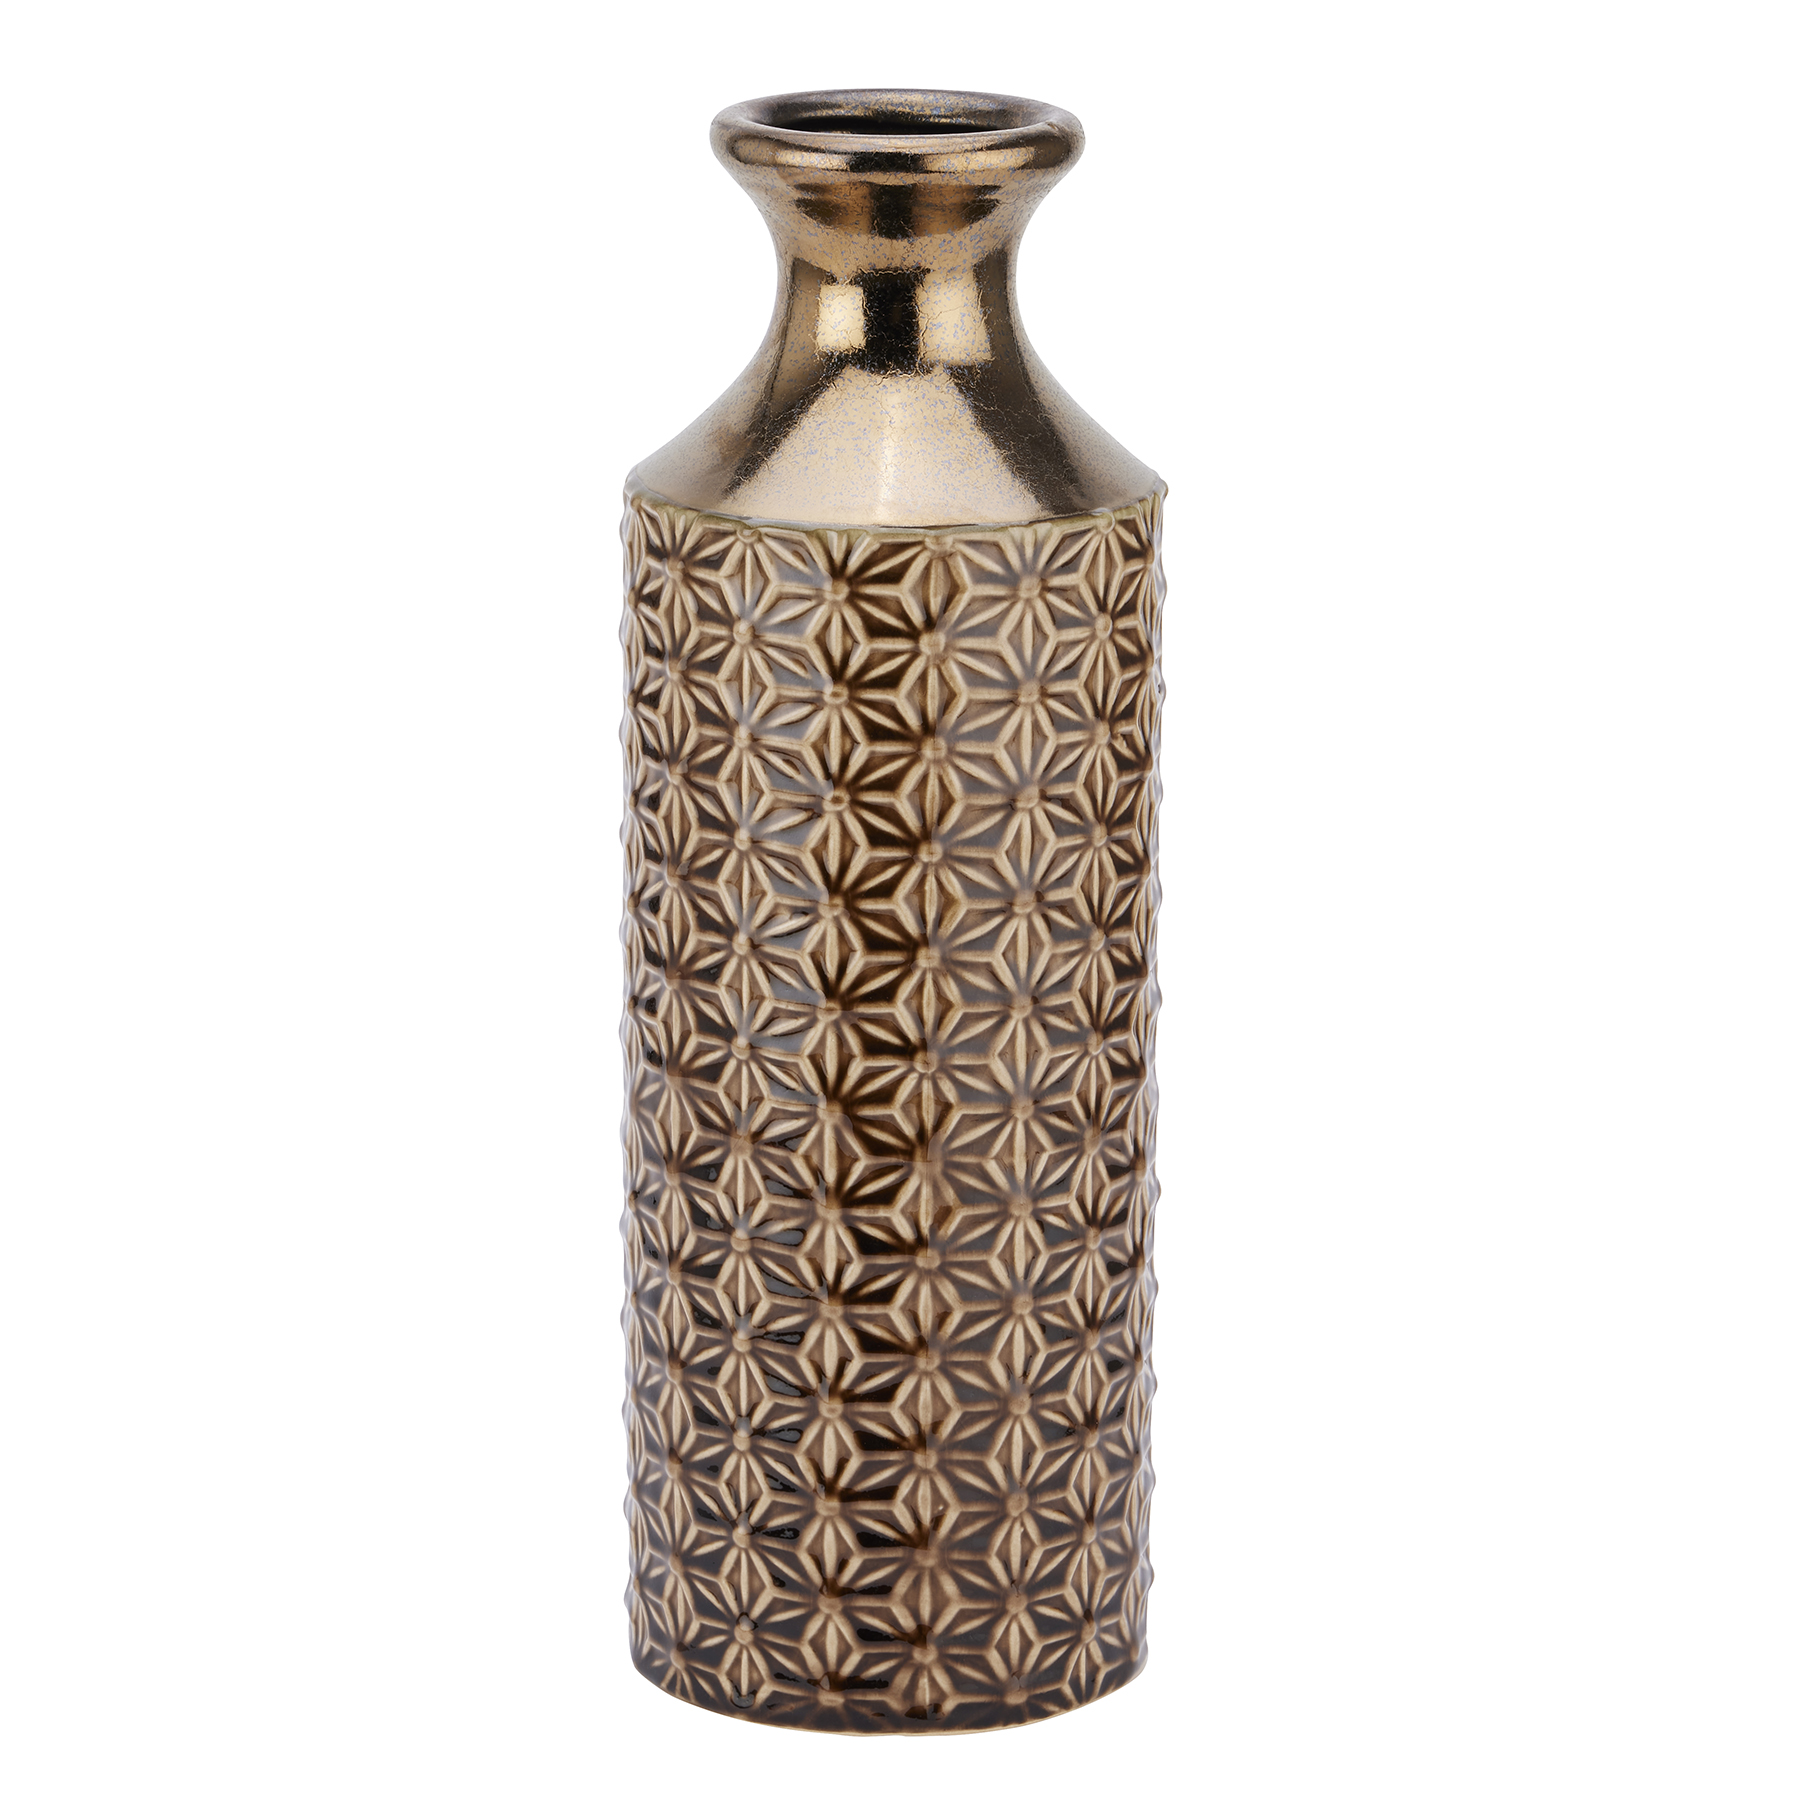 Seville Collection Caramel Fluted Vase - Image 1